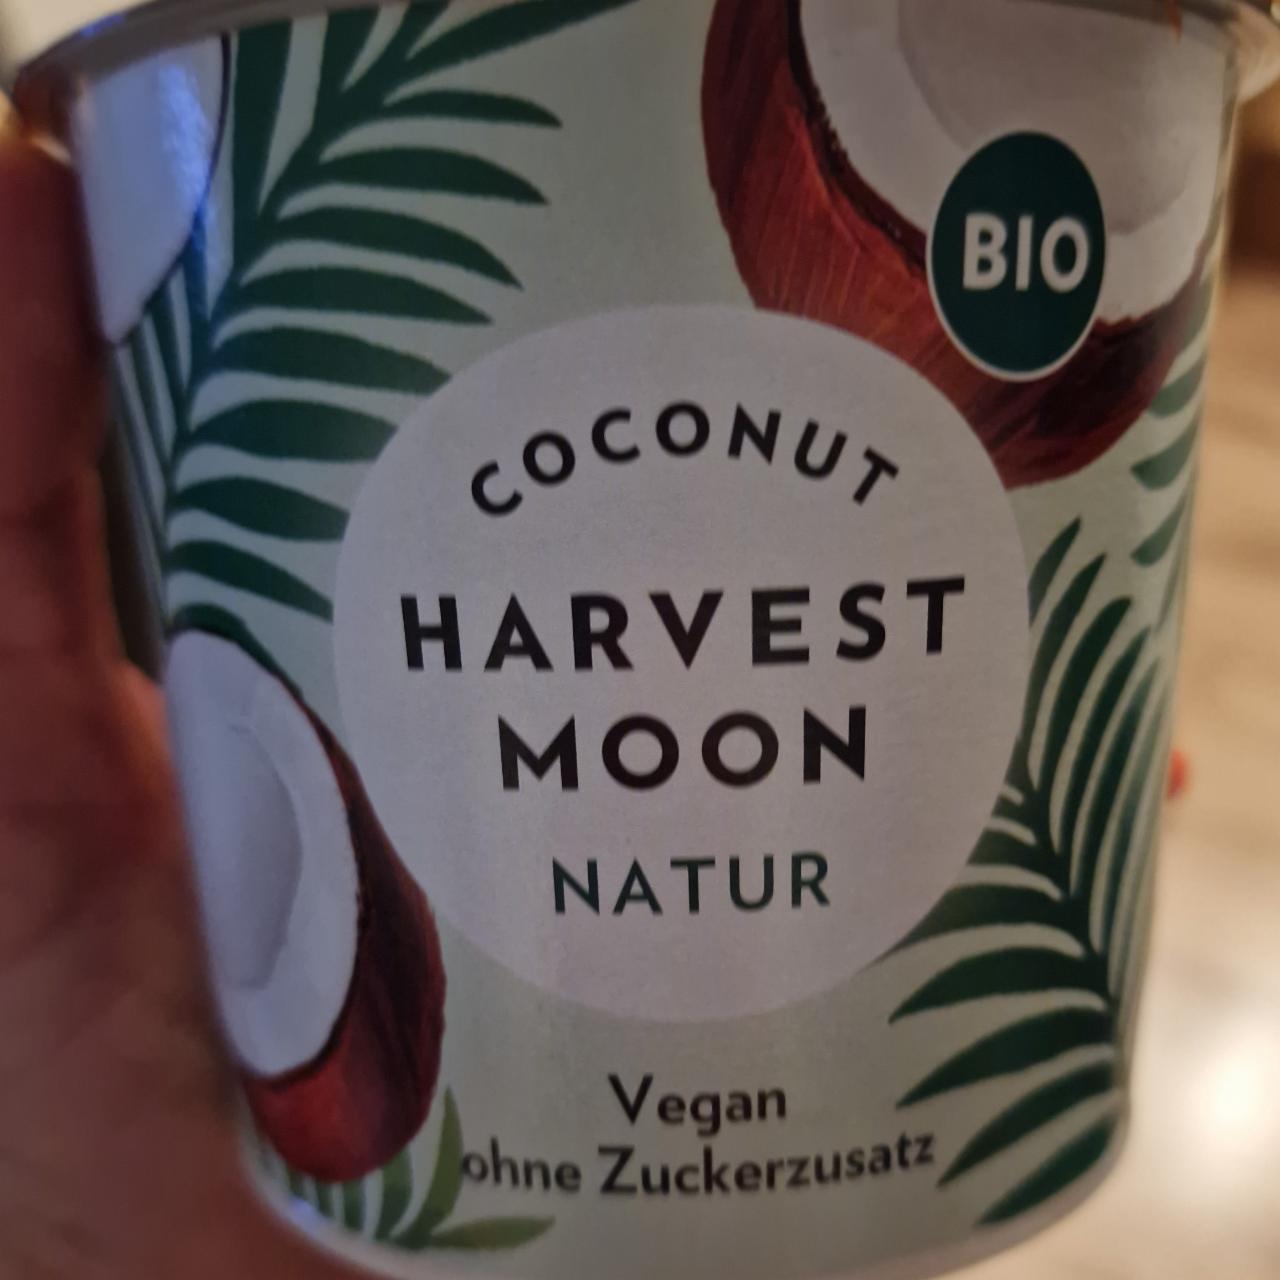 Fotografie - Bio Coconut Natur Harvest Moon